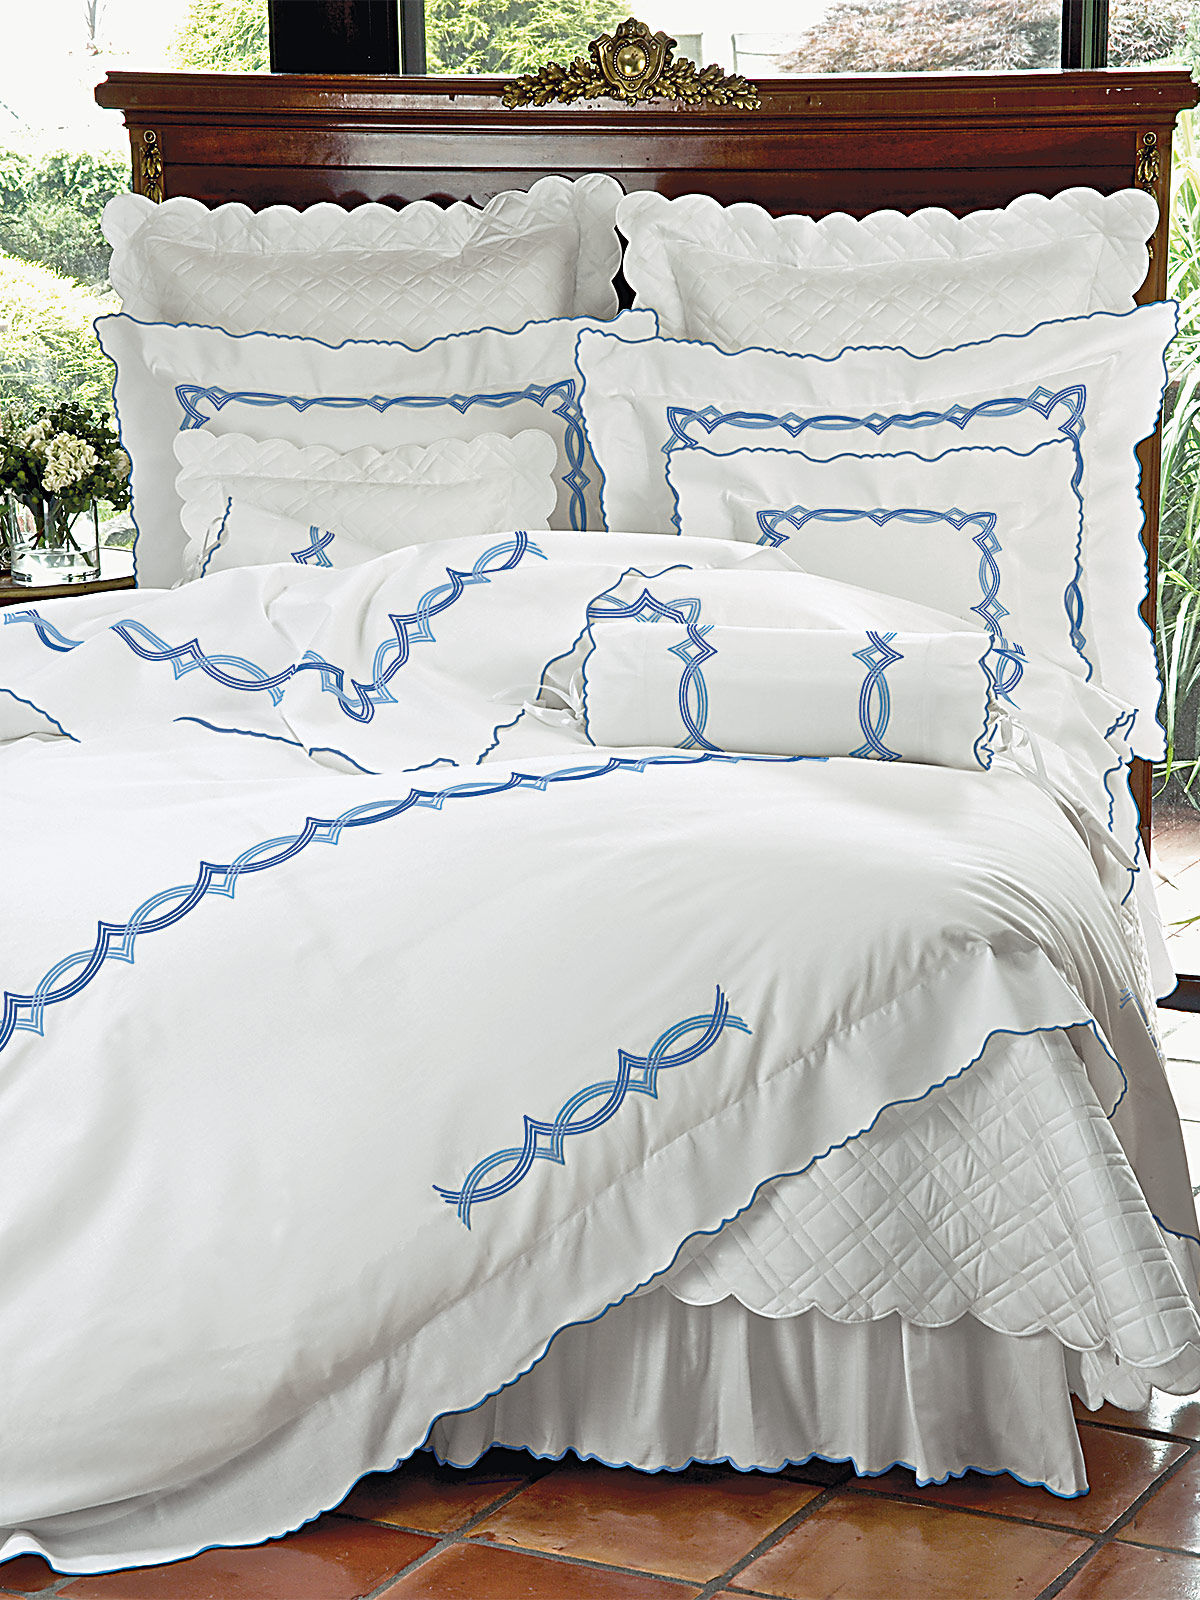 Riviera Luxury Bedding Italian Bed, Schweitzer Linens Duvet Covers